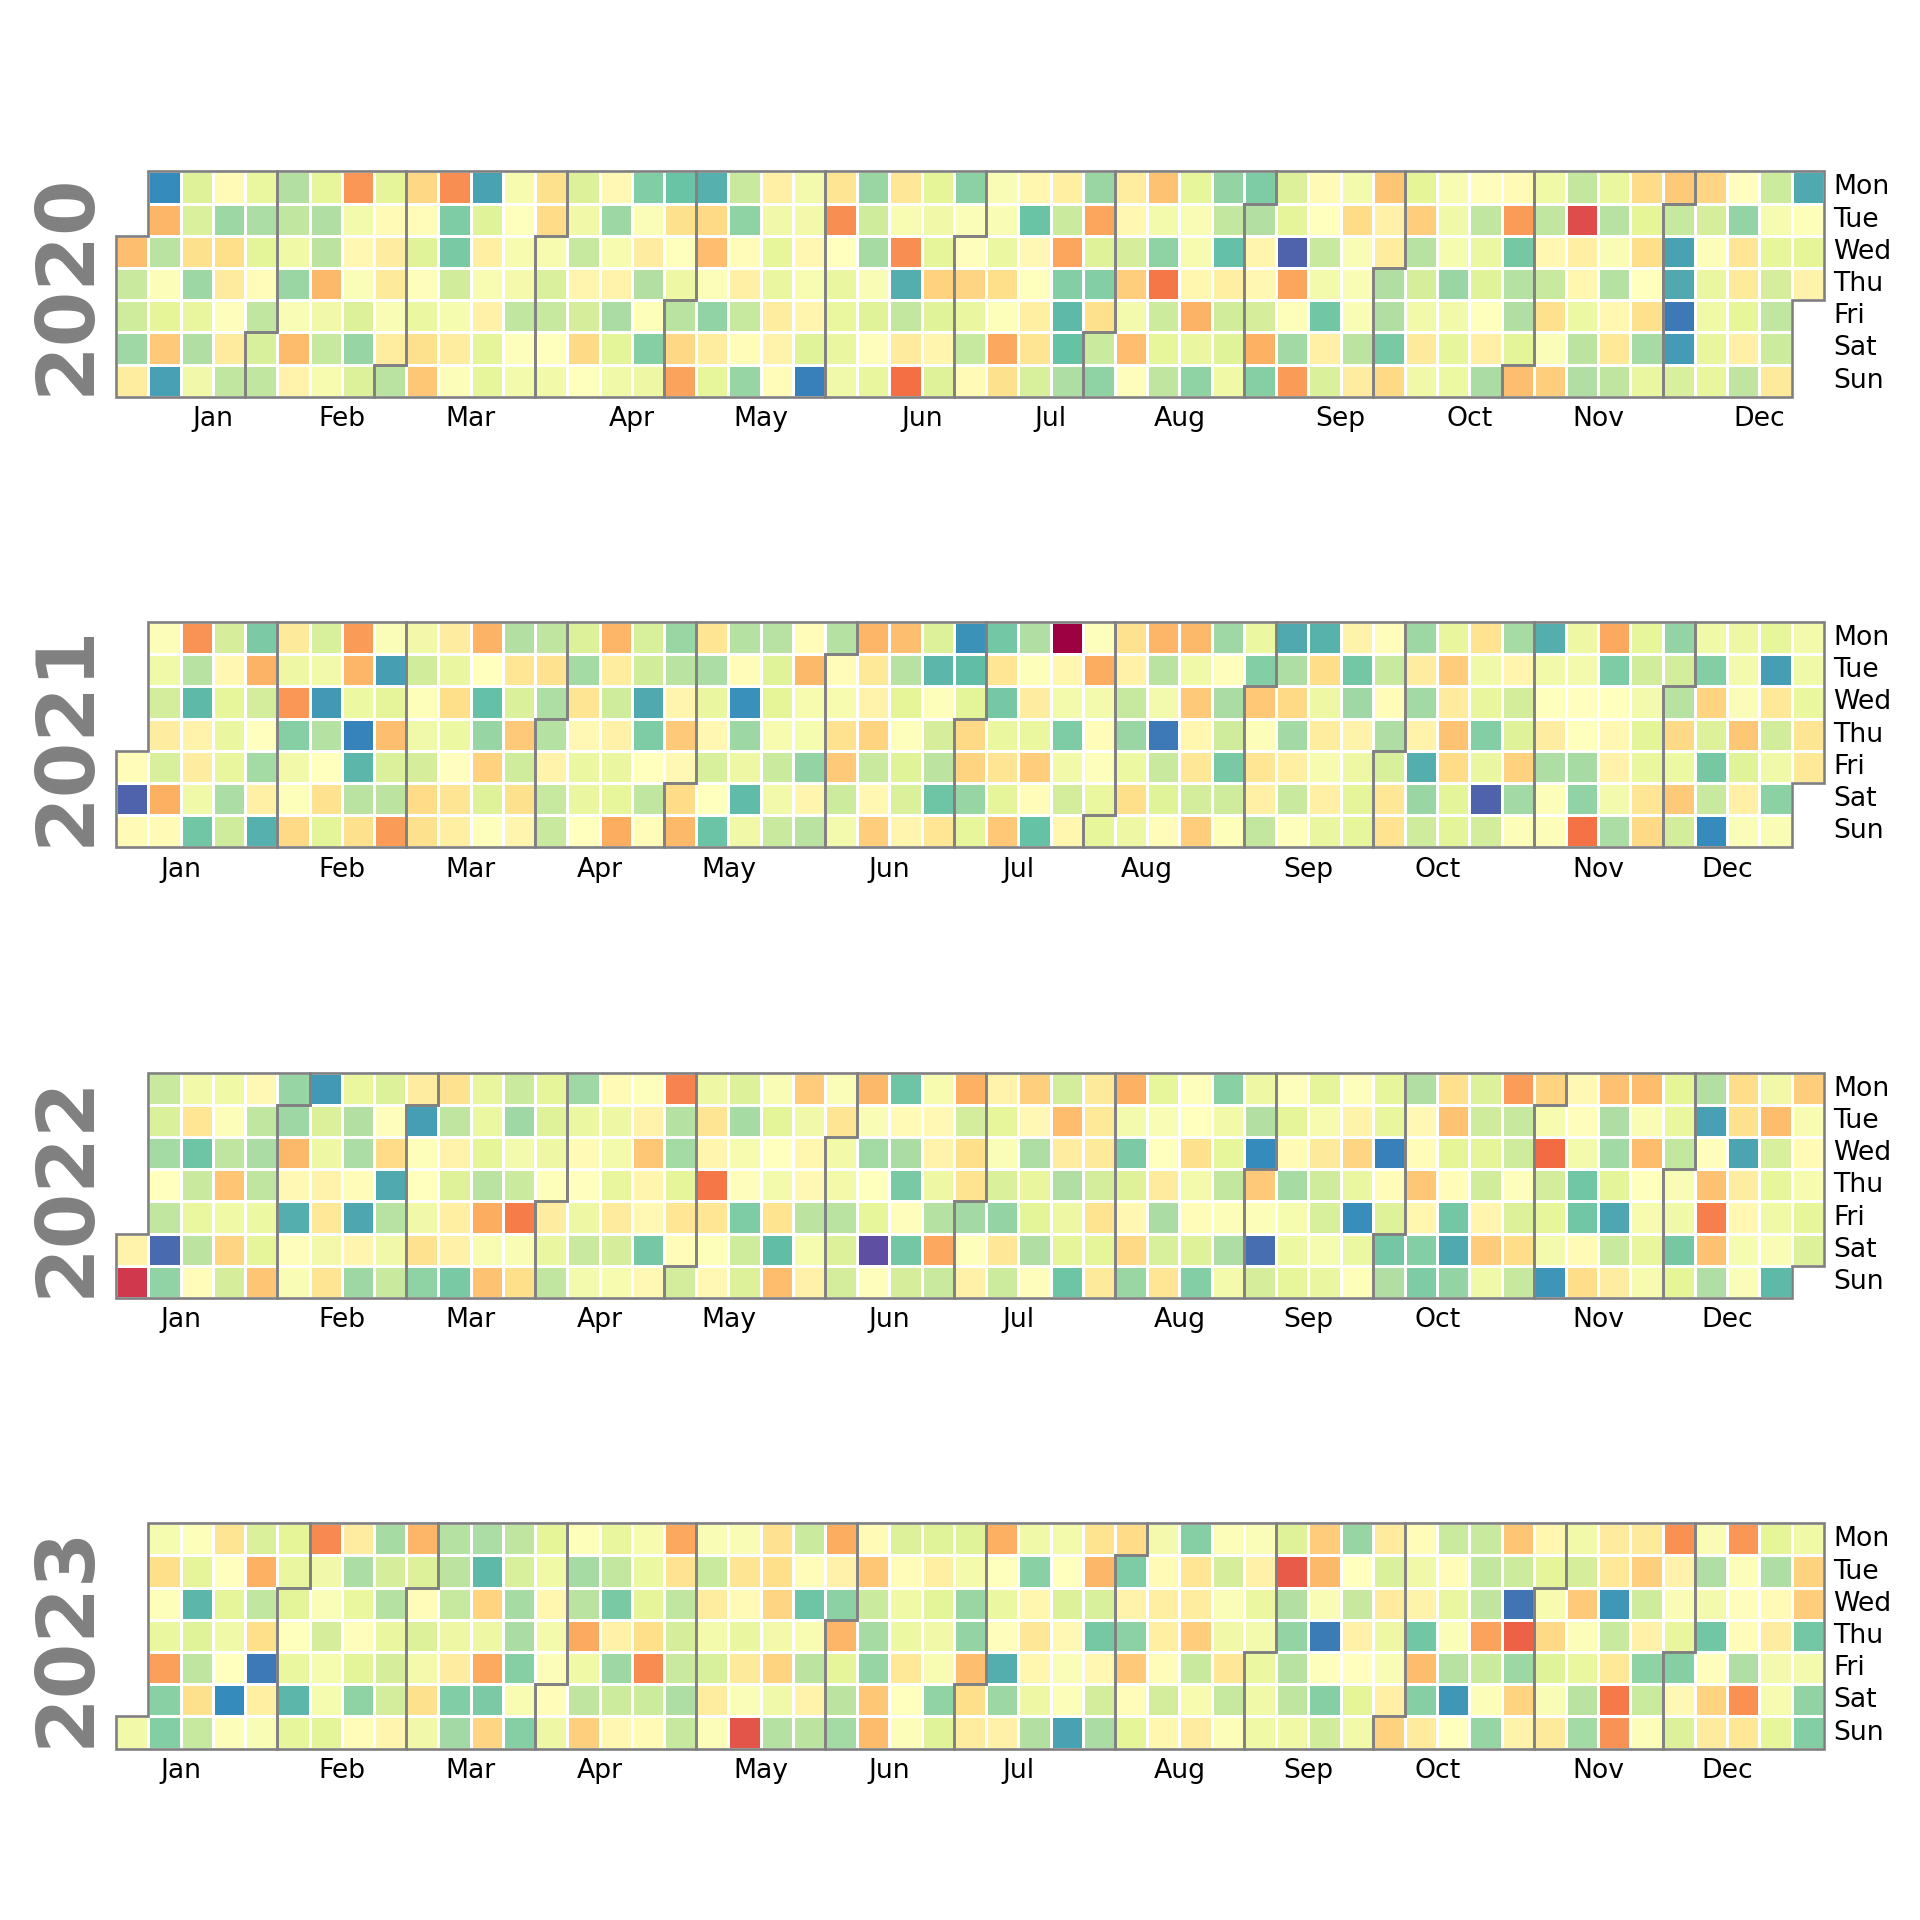 Calendar heatmap in matplotlib with calplot